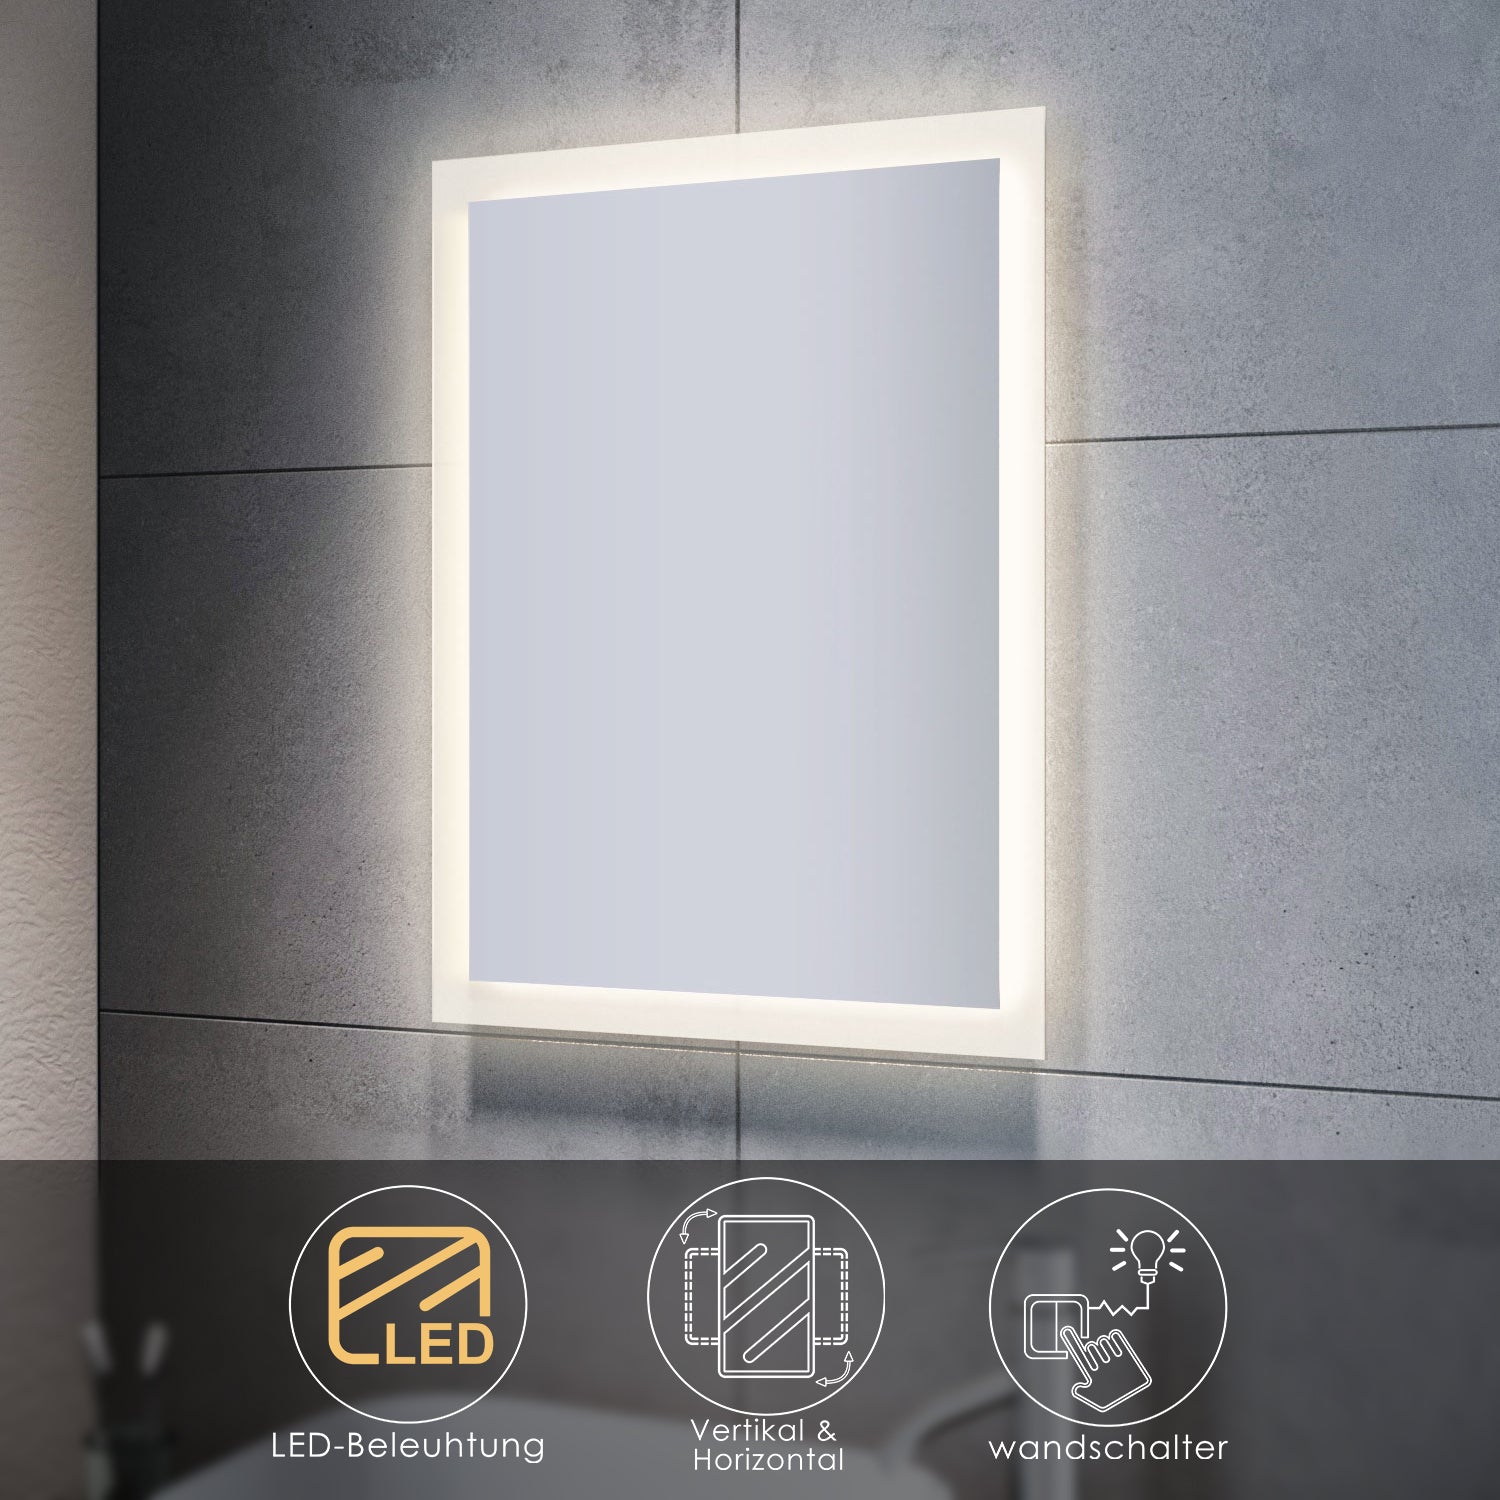 SONNI Badspiegel mit LED Beleuchtung Badezimmerspiegel Wandspiegel Lichtspiegel 80x60